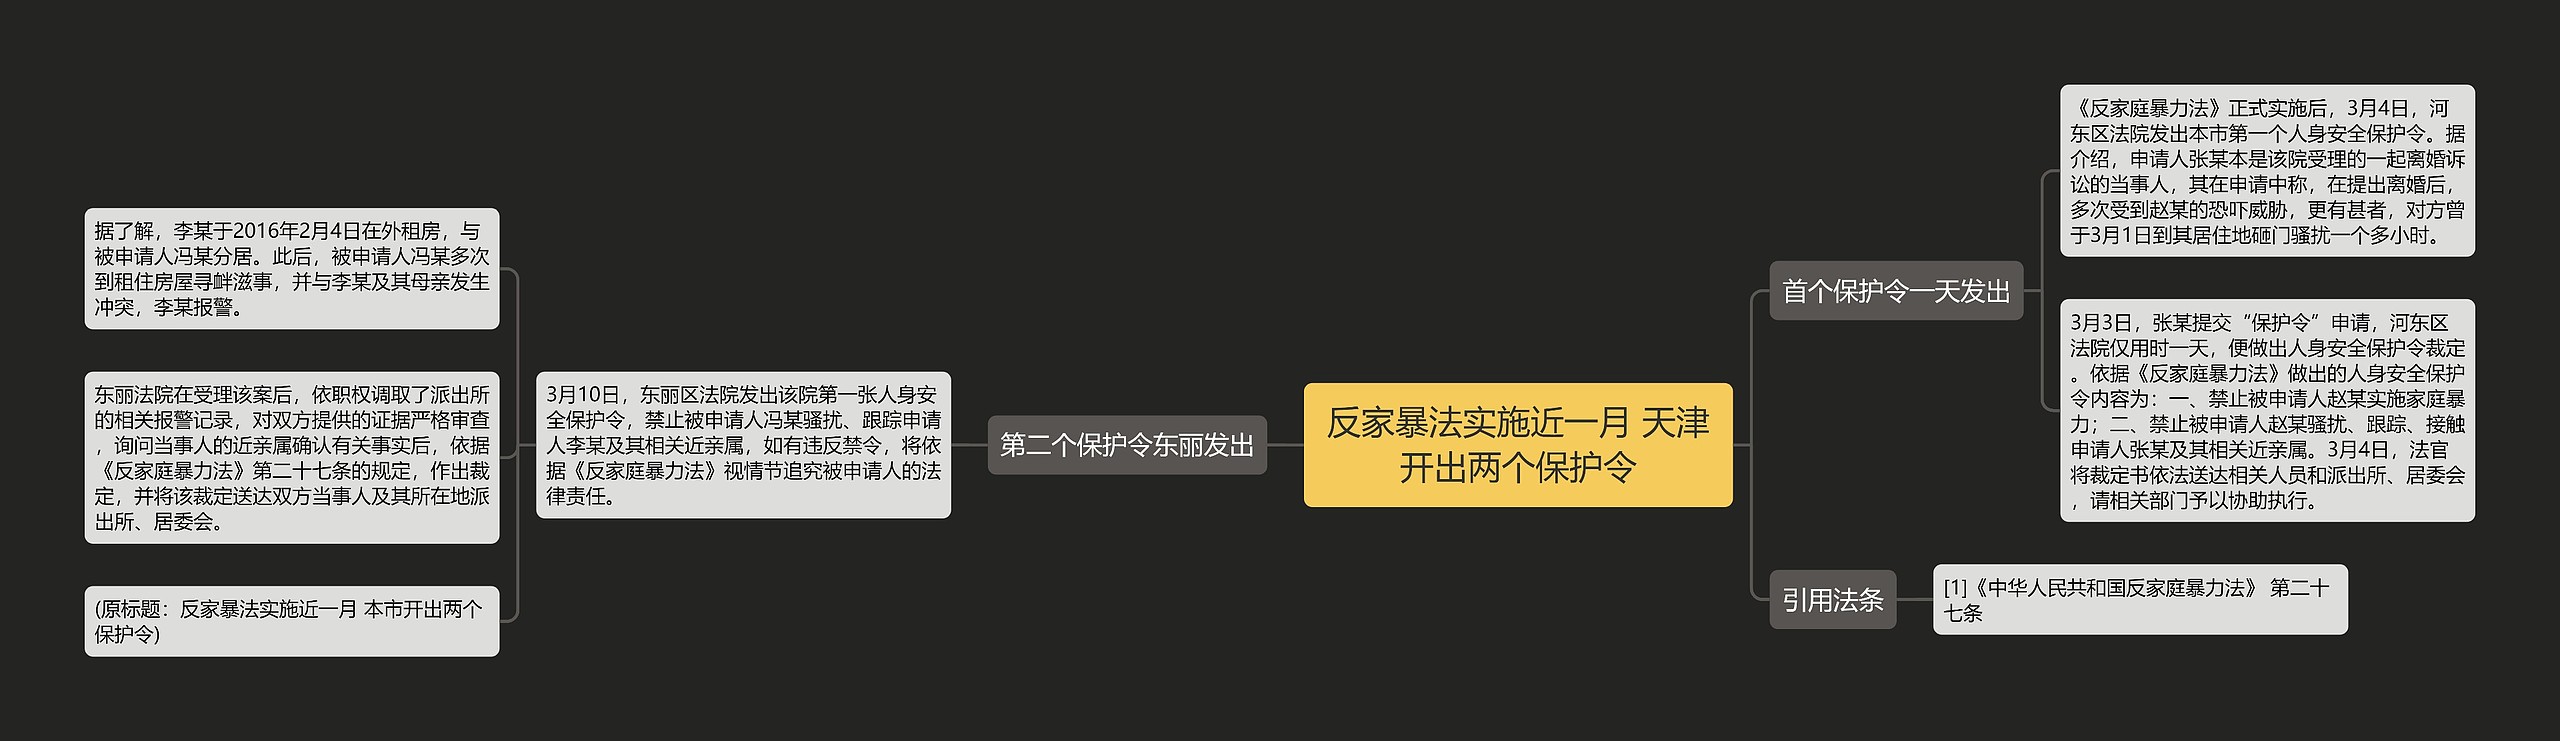 反家暴法实施近一月 天津开出两个保护令